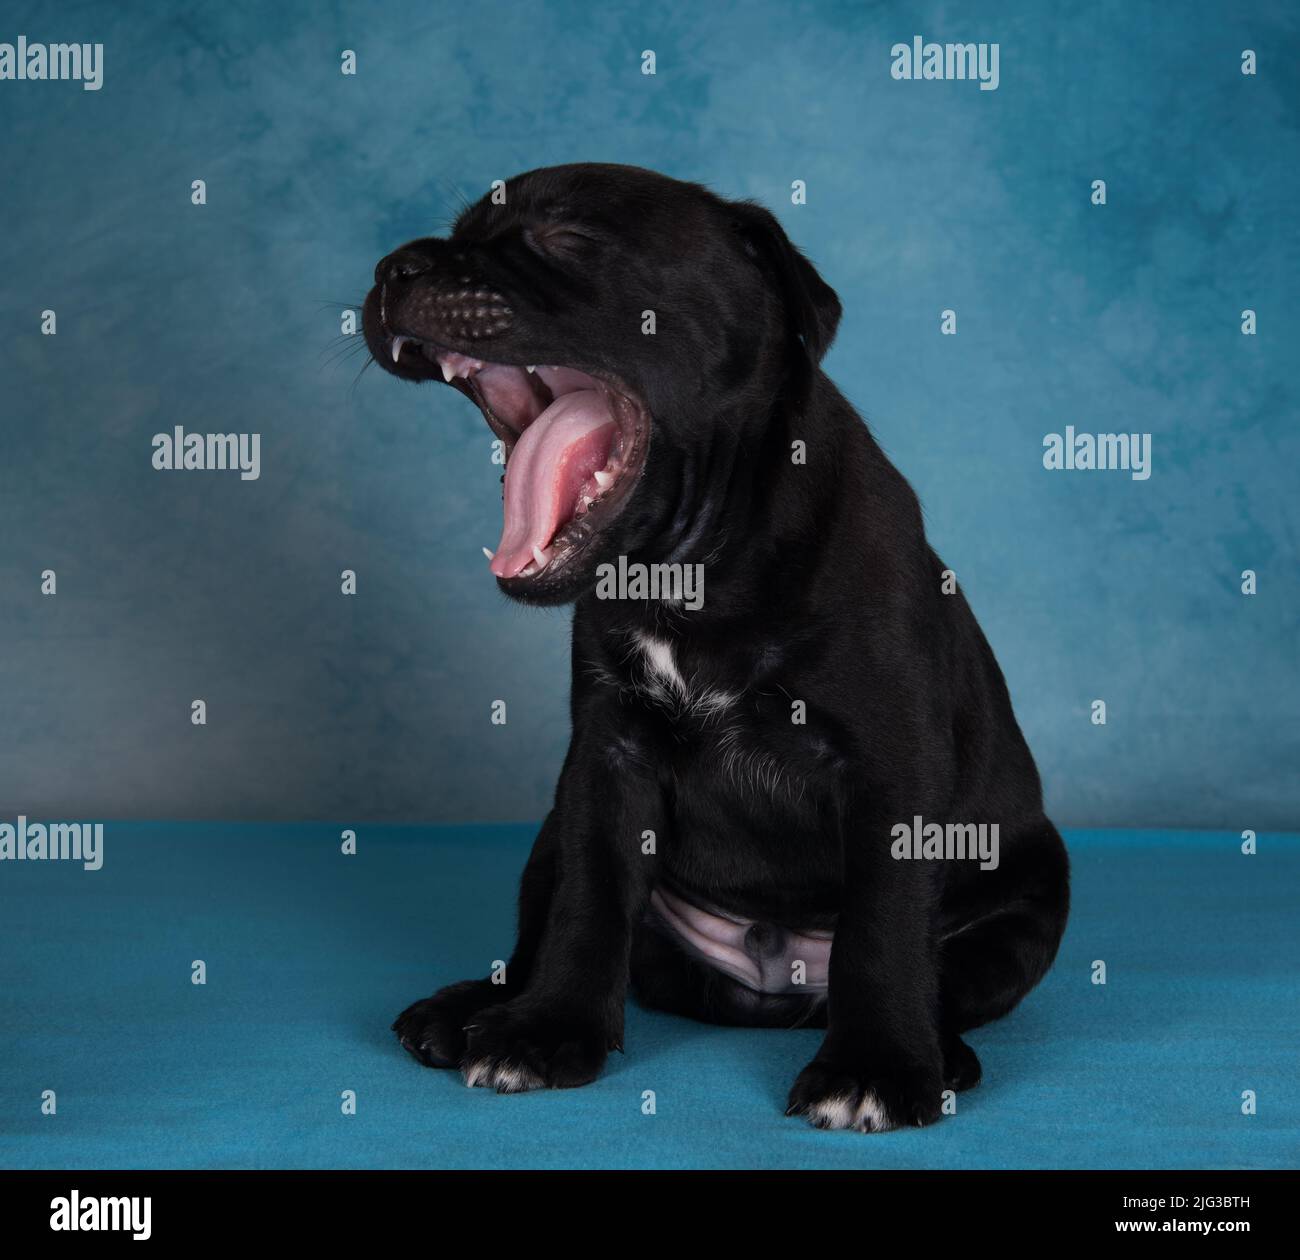 Le chiot est bâillonnant. Chien américain Staffordshire Terrier noir ou chiot AmStaff sur fond bleu Banque D'Images